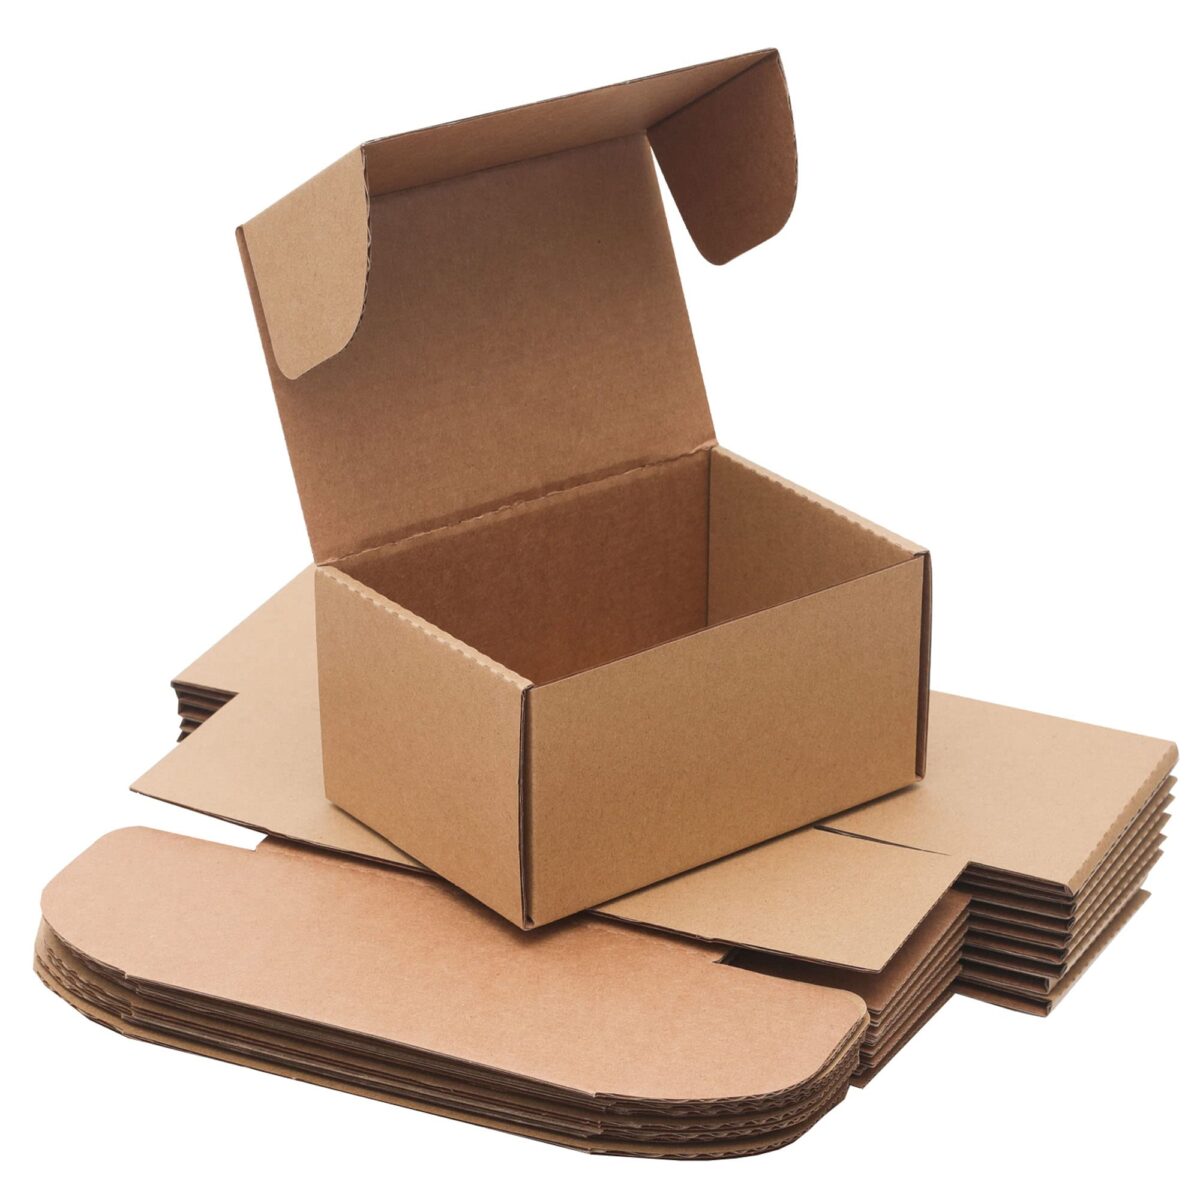 printed cardboard boxes